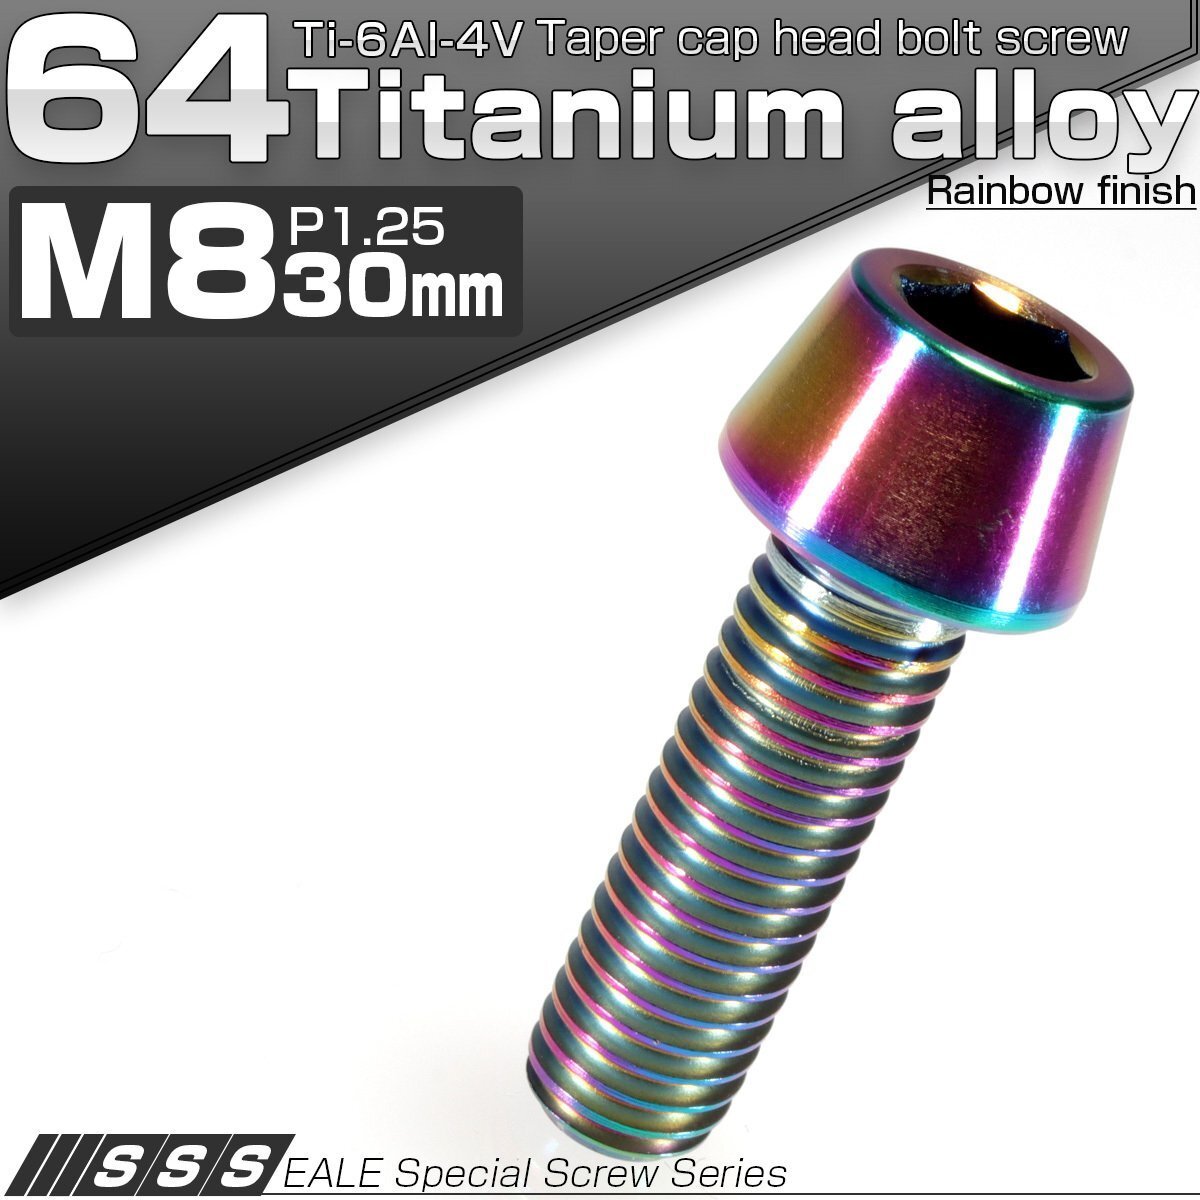 64チタン M8×30mm P1.25 テーパー キャップボルト 焼き色風 六角穴付きボルト Ti6Al-4V チタンボルト JA133_画像1